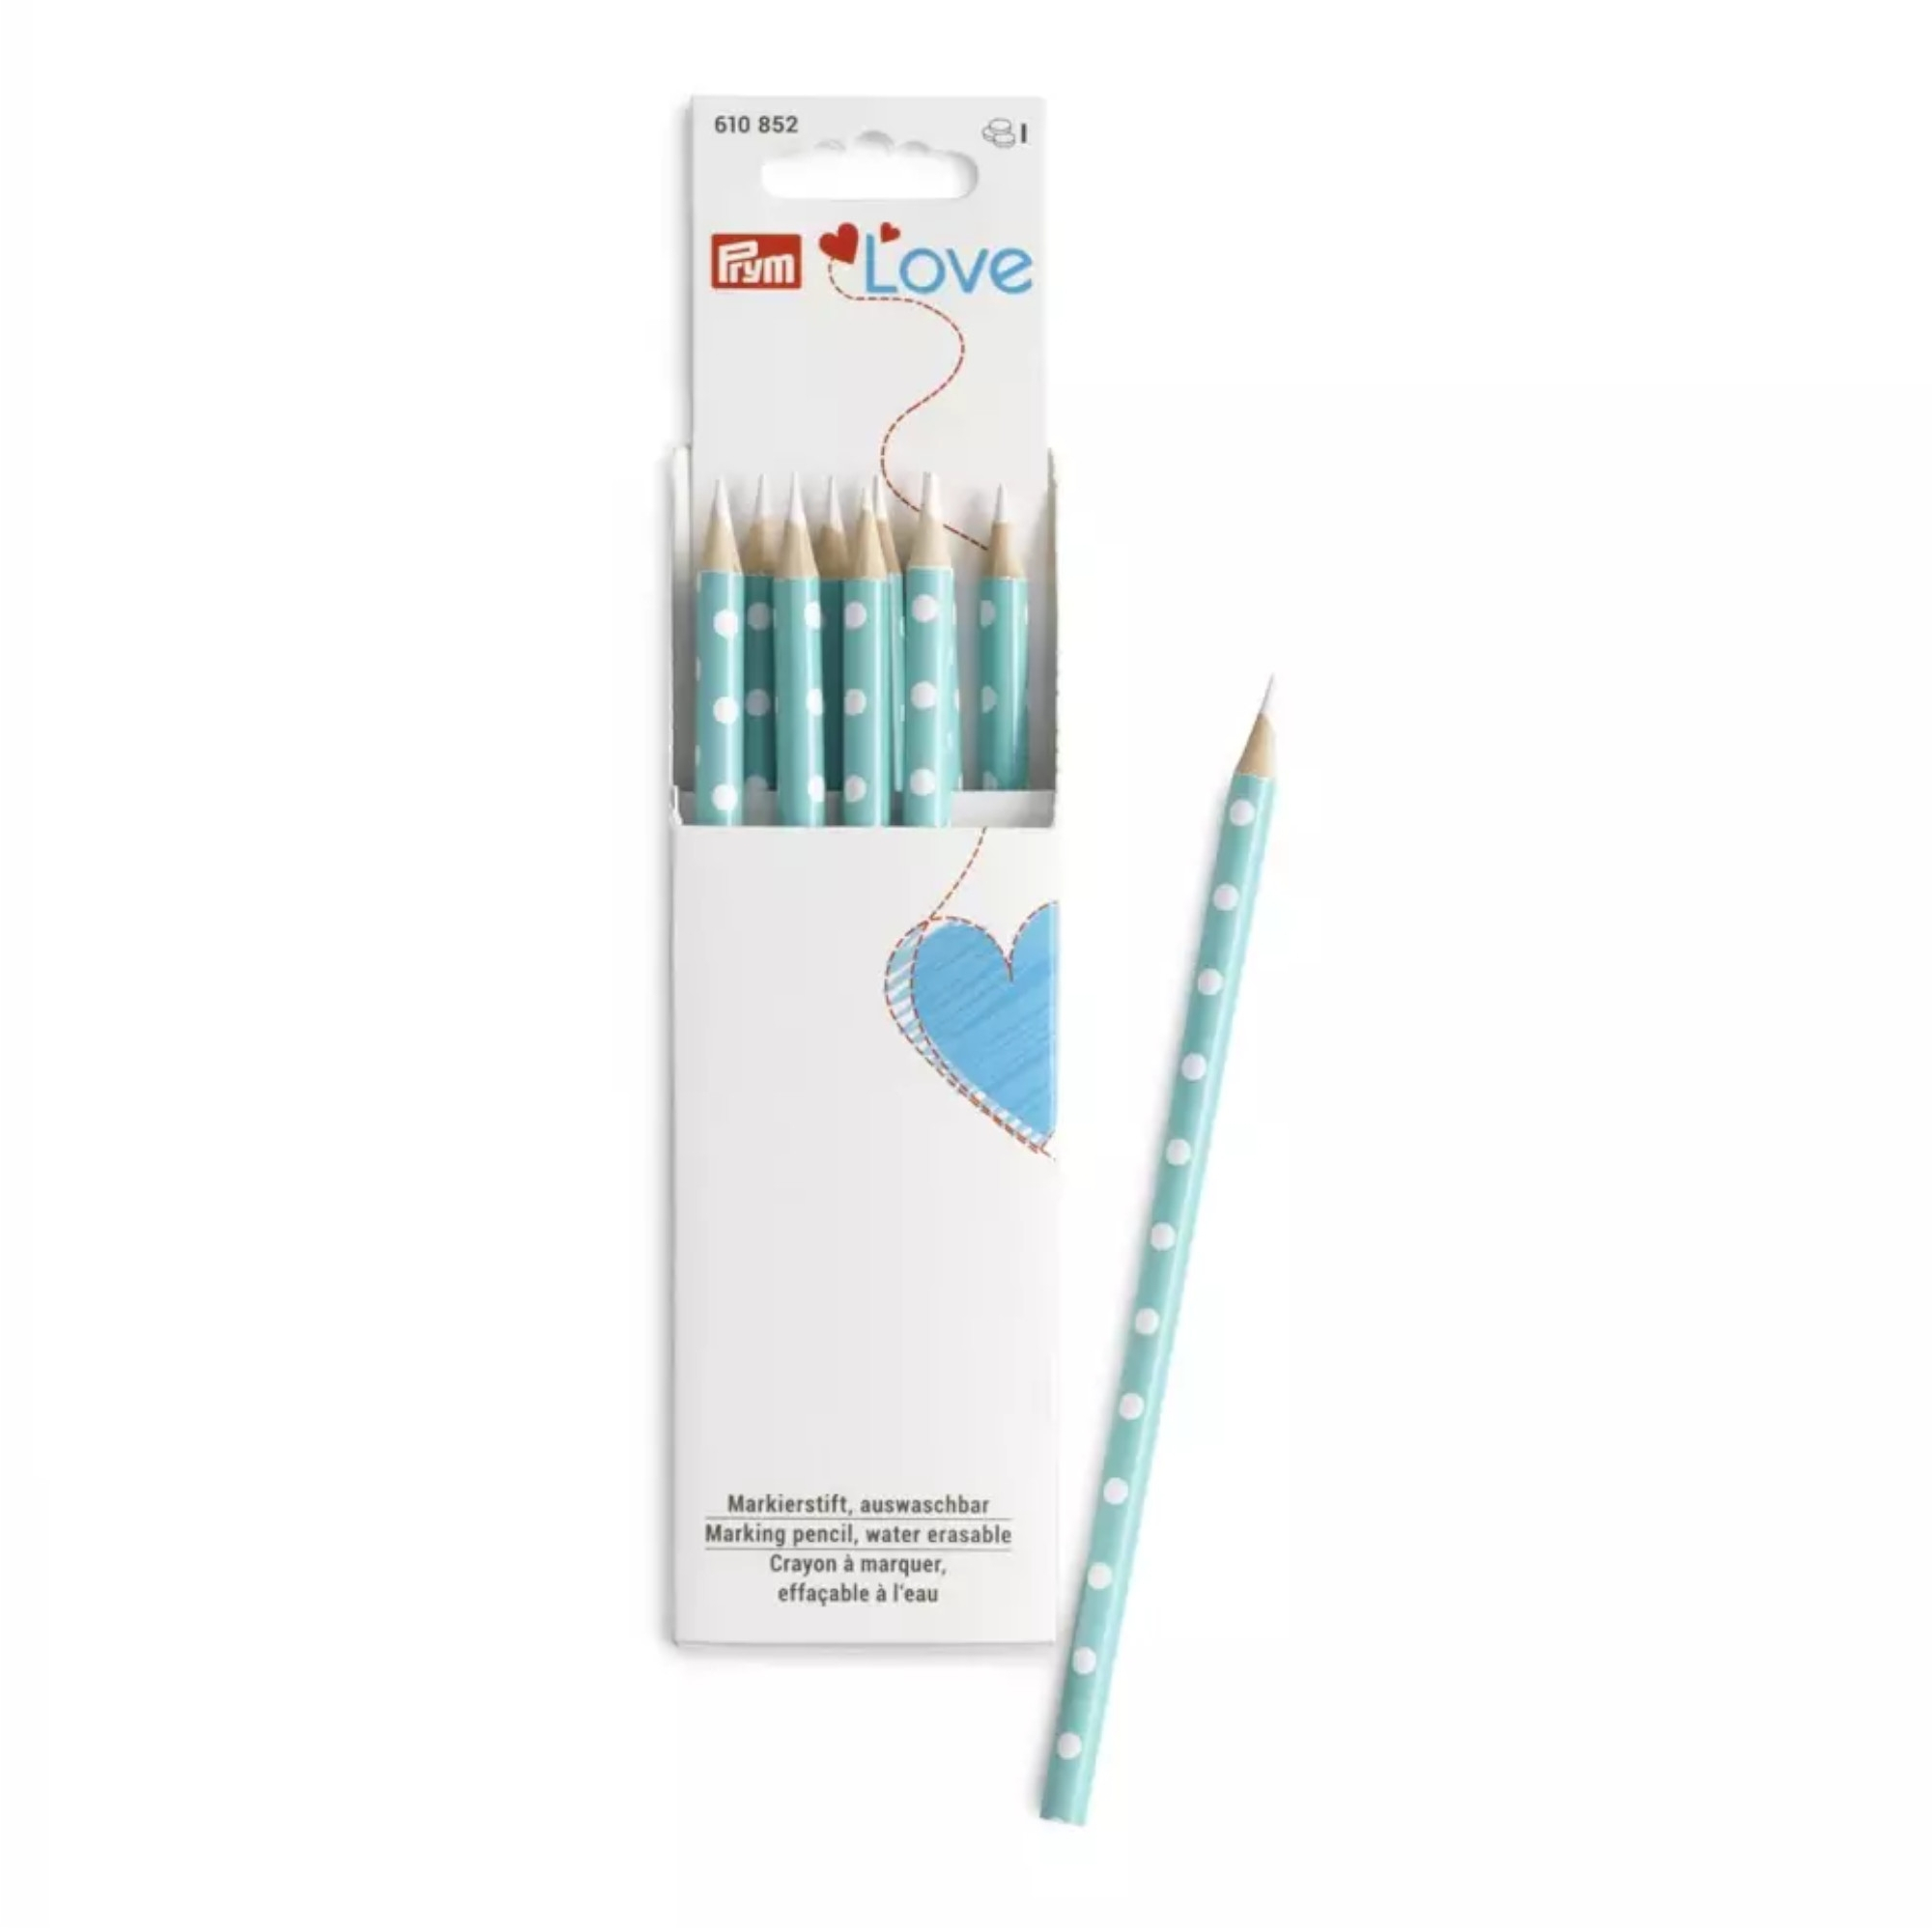 Prym - Crayon craie avec brosse à effacer 11 cm - blanc + bleu - 2 pièces